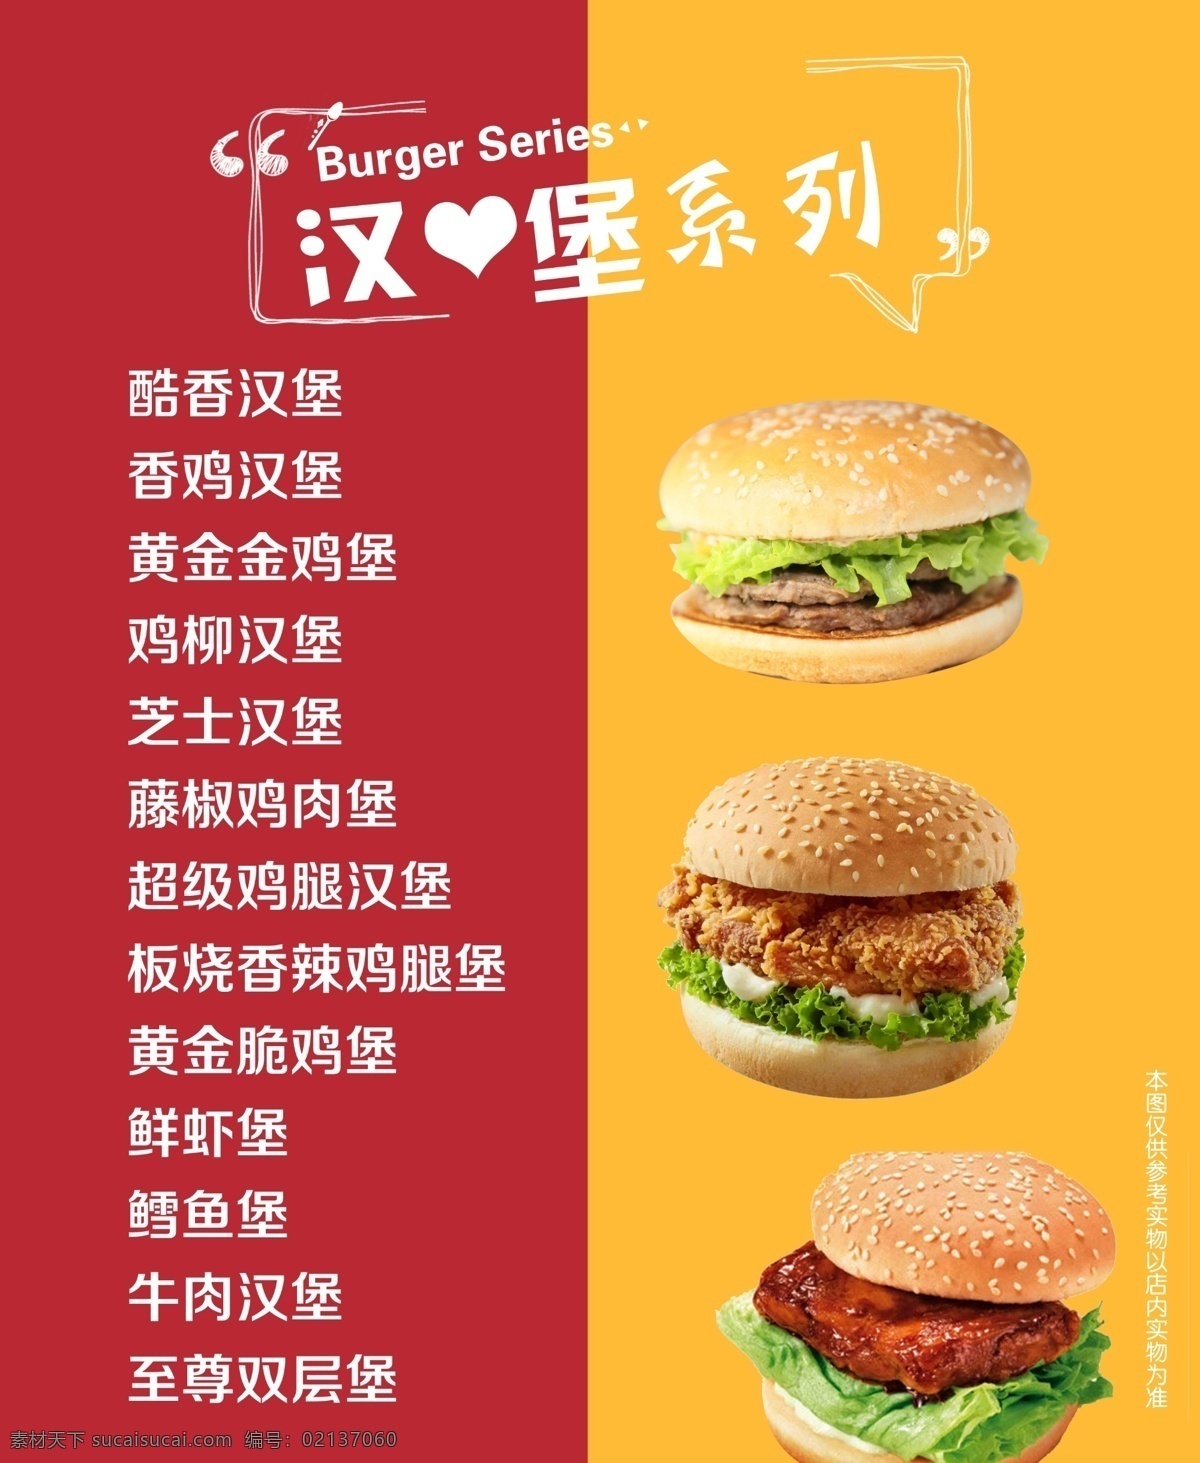 汉堡系列 汉堡 背景 灯箱 颜色 汉堡图片 霞霞制作 室内广告设计